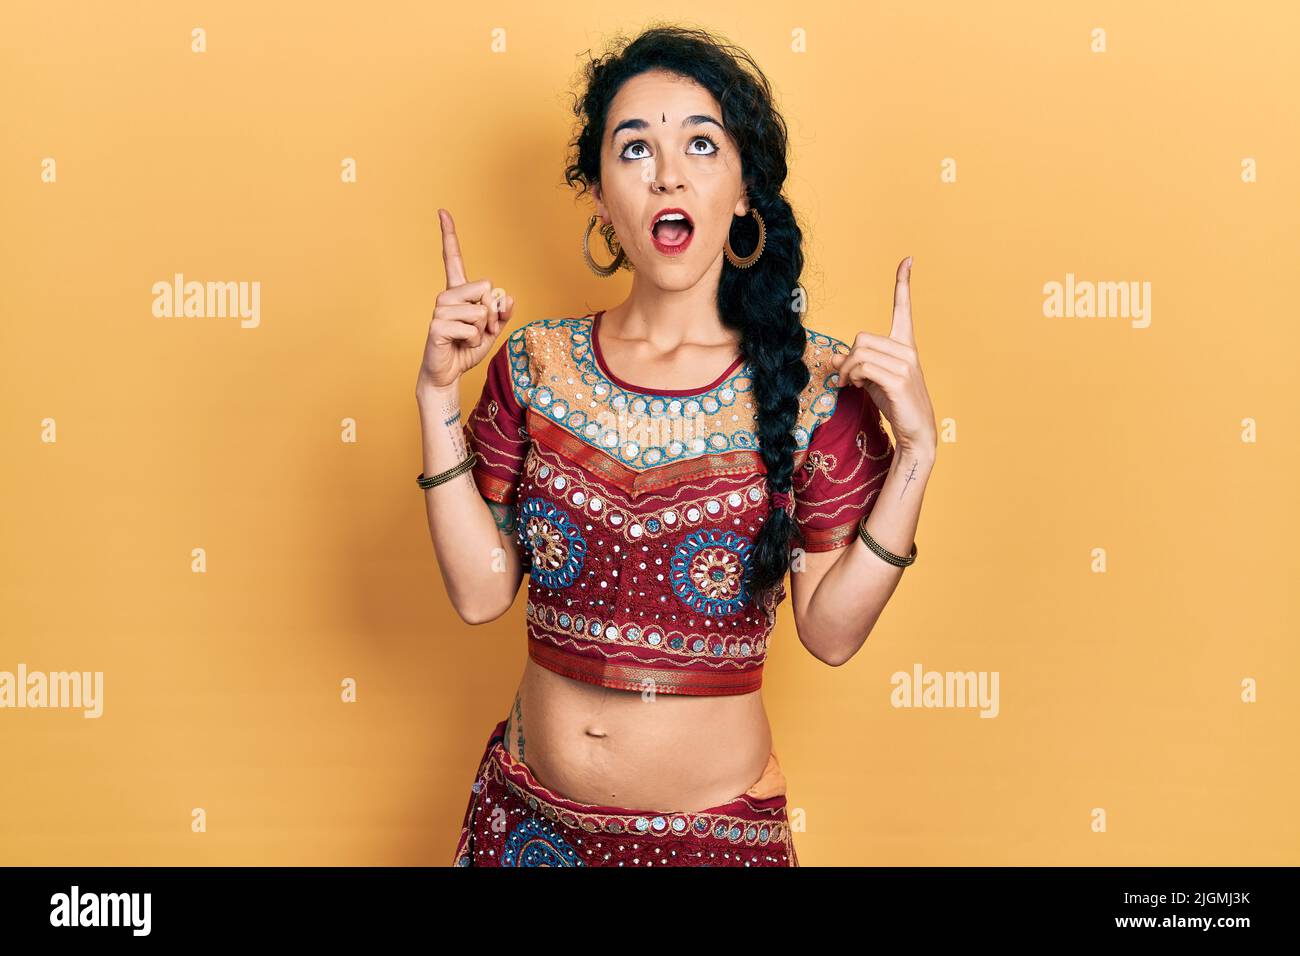 Die junge Frau in Bindi- und bollywood-Kleidung staunte und überraschte mit ihren Fingern und erhobenen Armen nach oben und zeigte. Stockfoto